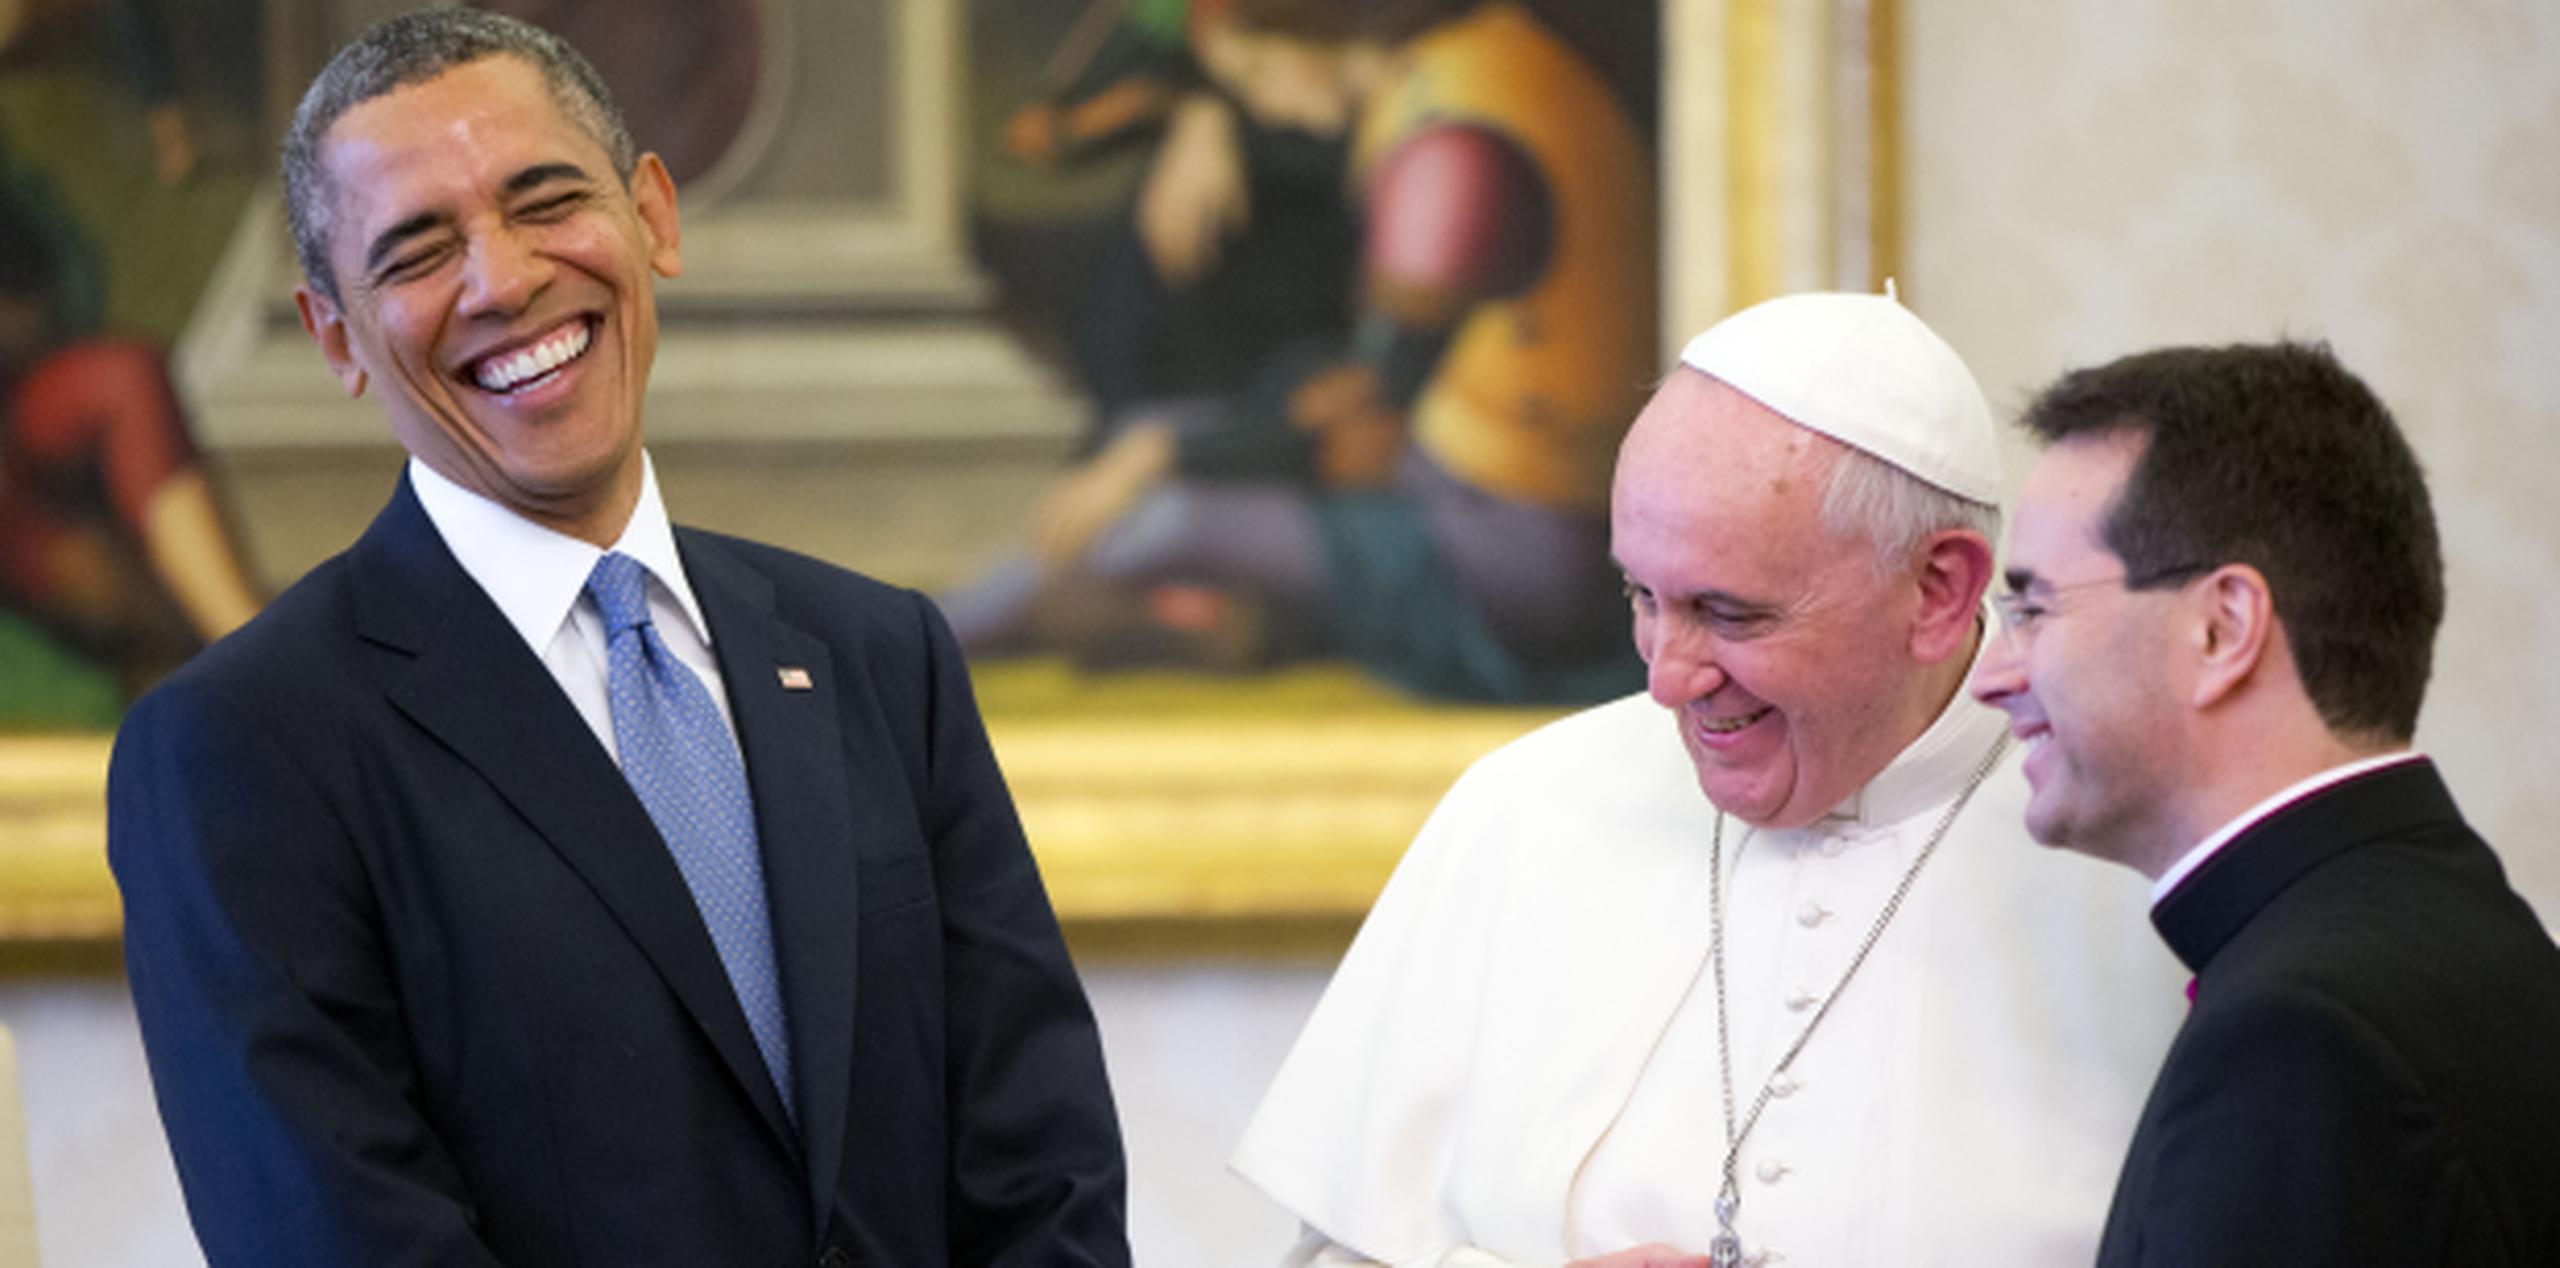 El papa se había mantenido serio durante las fotos y el saludo a Obama, pero se le vio mas relajado y sonriente durante el intercambio de obsequios. (AP)